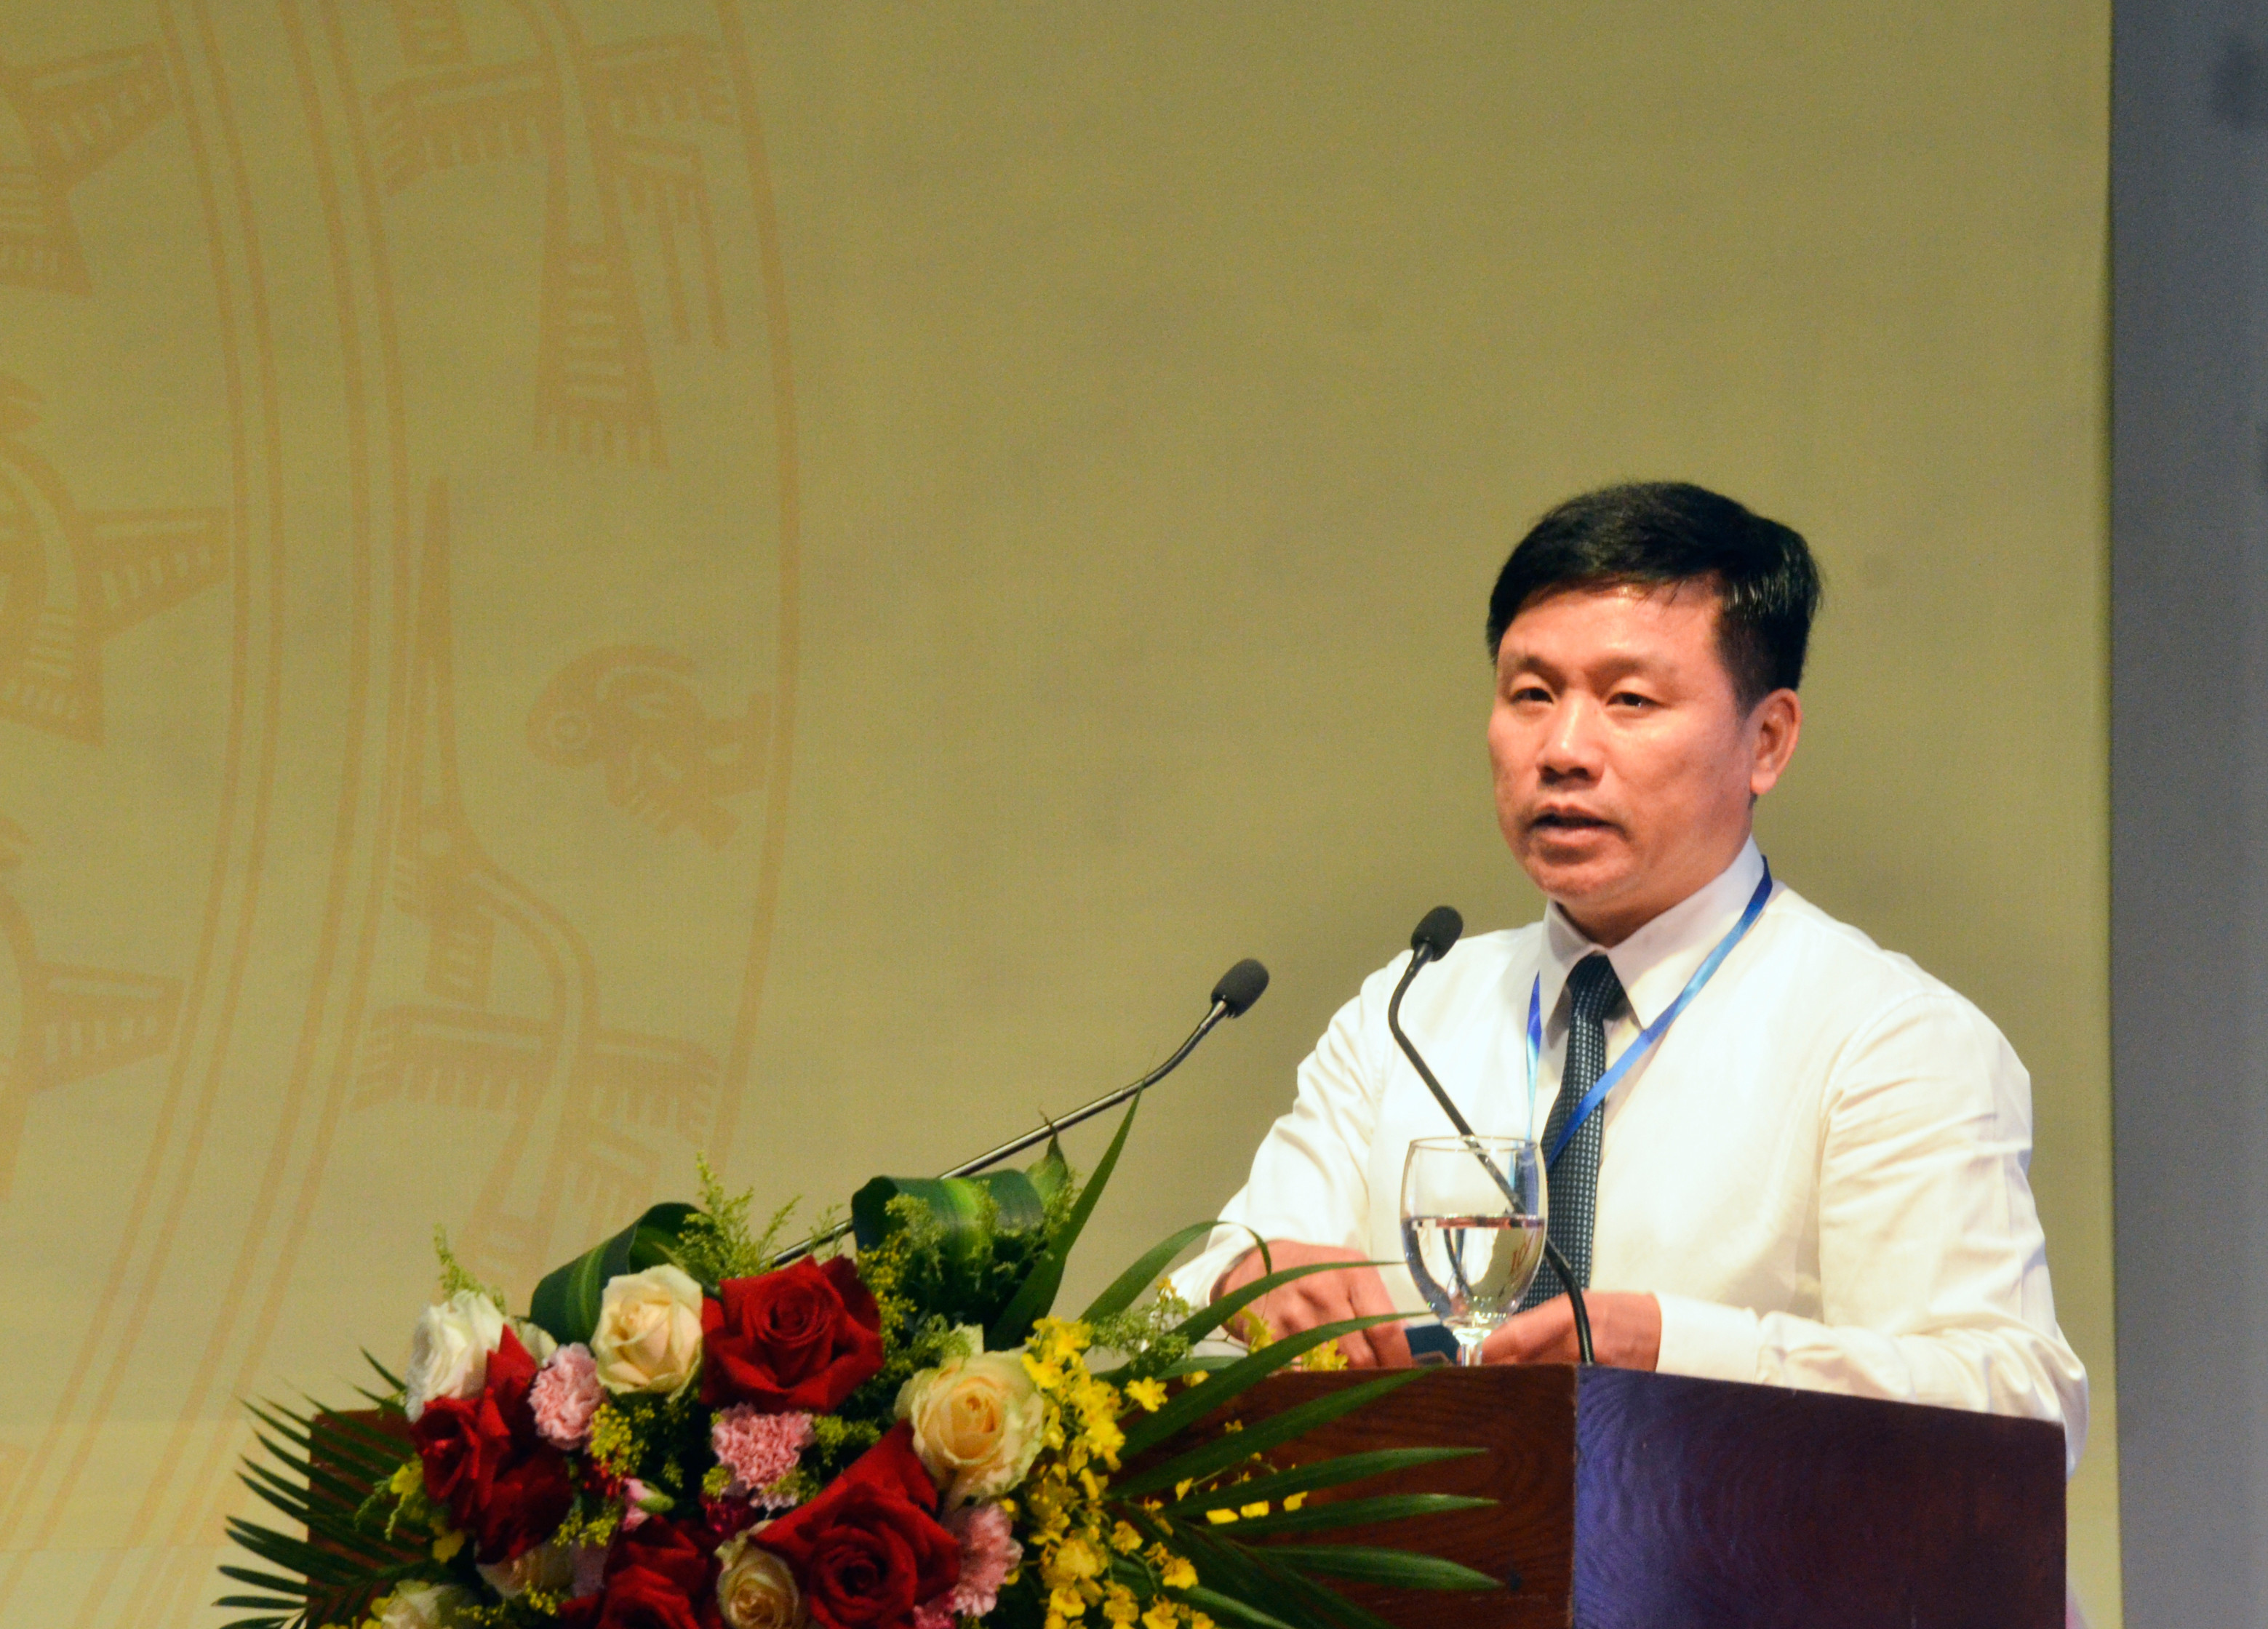 Đồng chí Hoàng Phú Hiền - Bí thư Đảng ủy, Giám đốc Sở GTVT phát biểu khai mạc đại hội. Ảnh